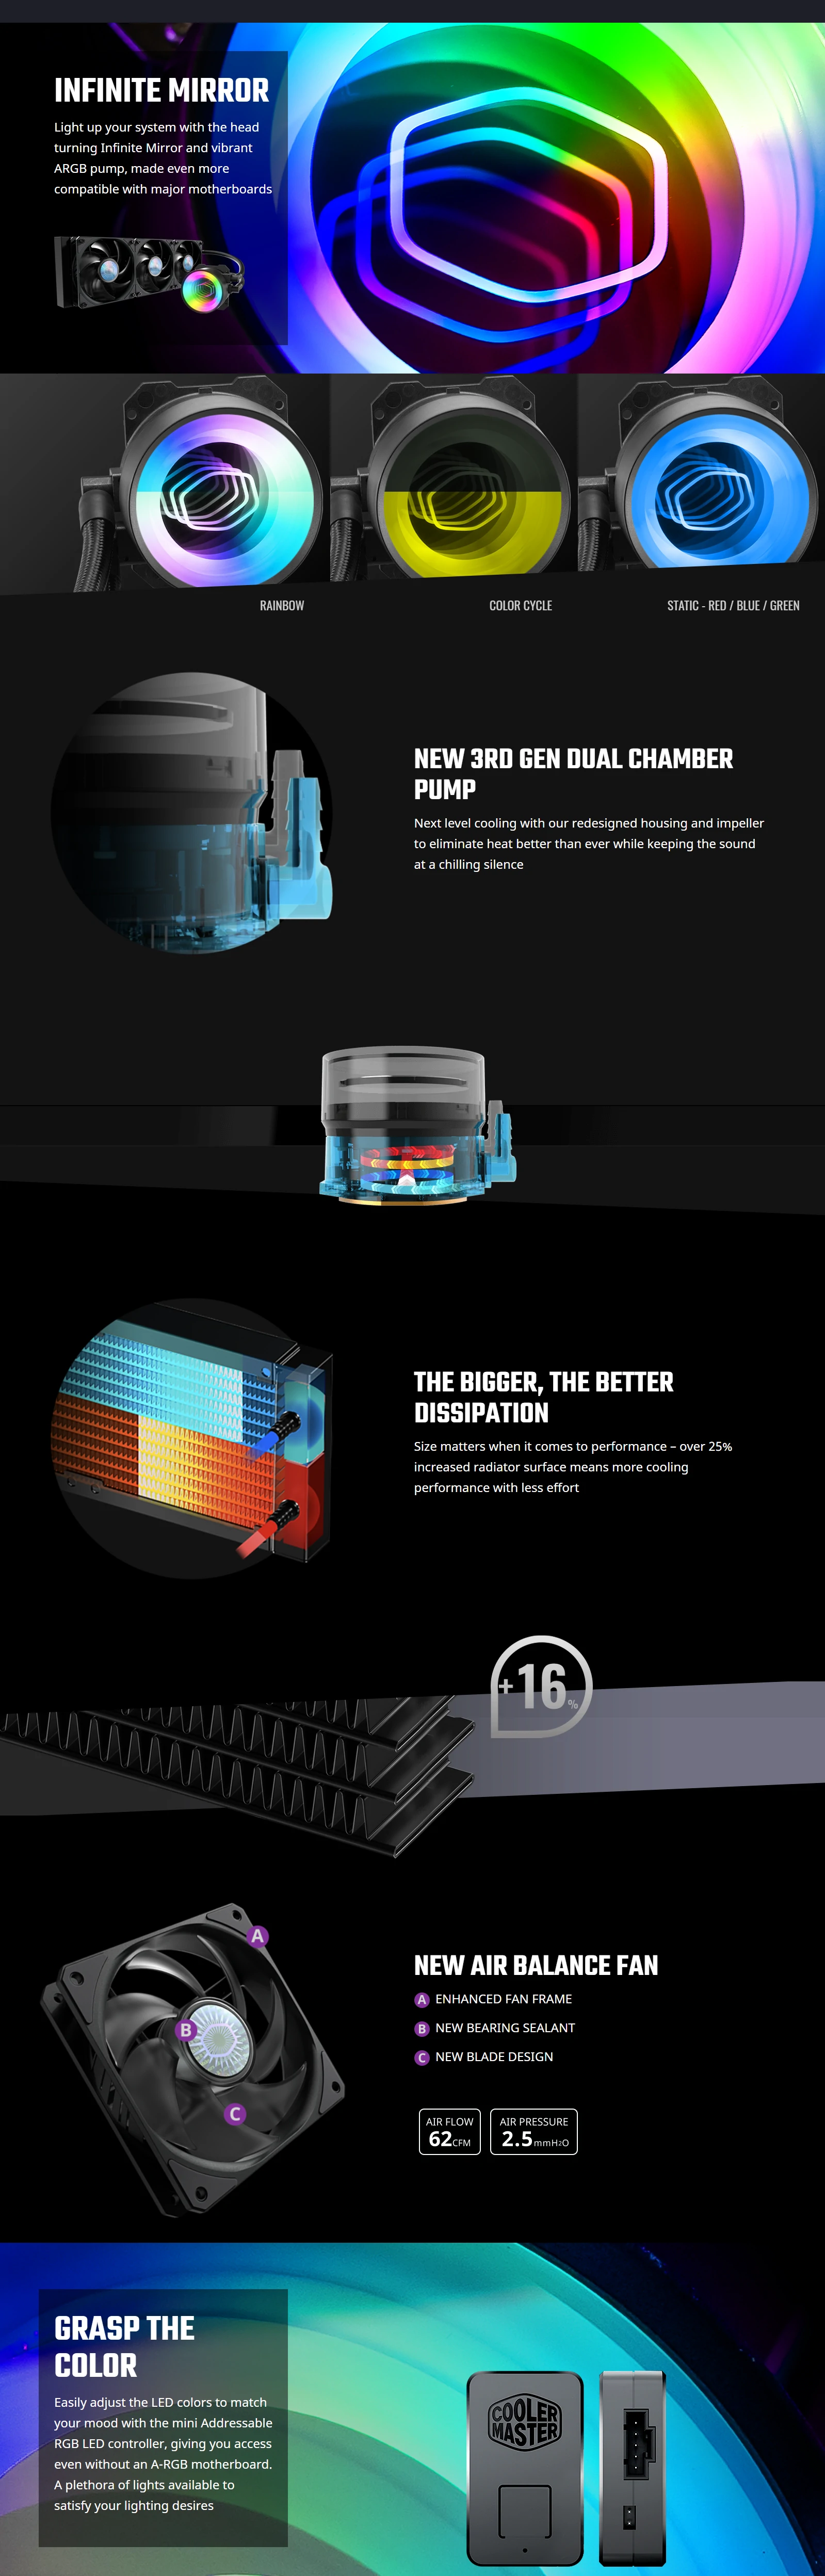 Overview - Cooler Master - MasterLiquid ML360 Mirror 360mm ARGB AIO Liquid CPU Cooler